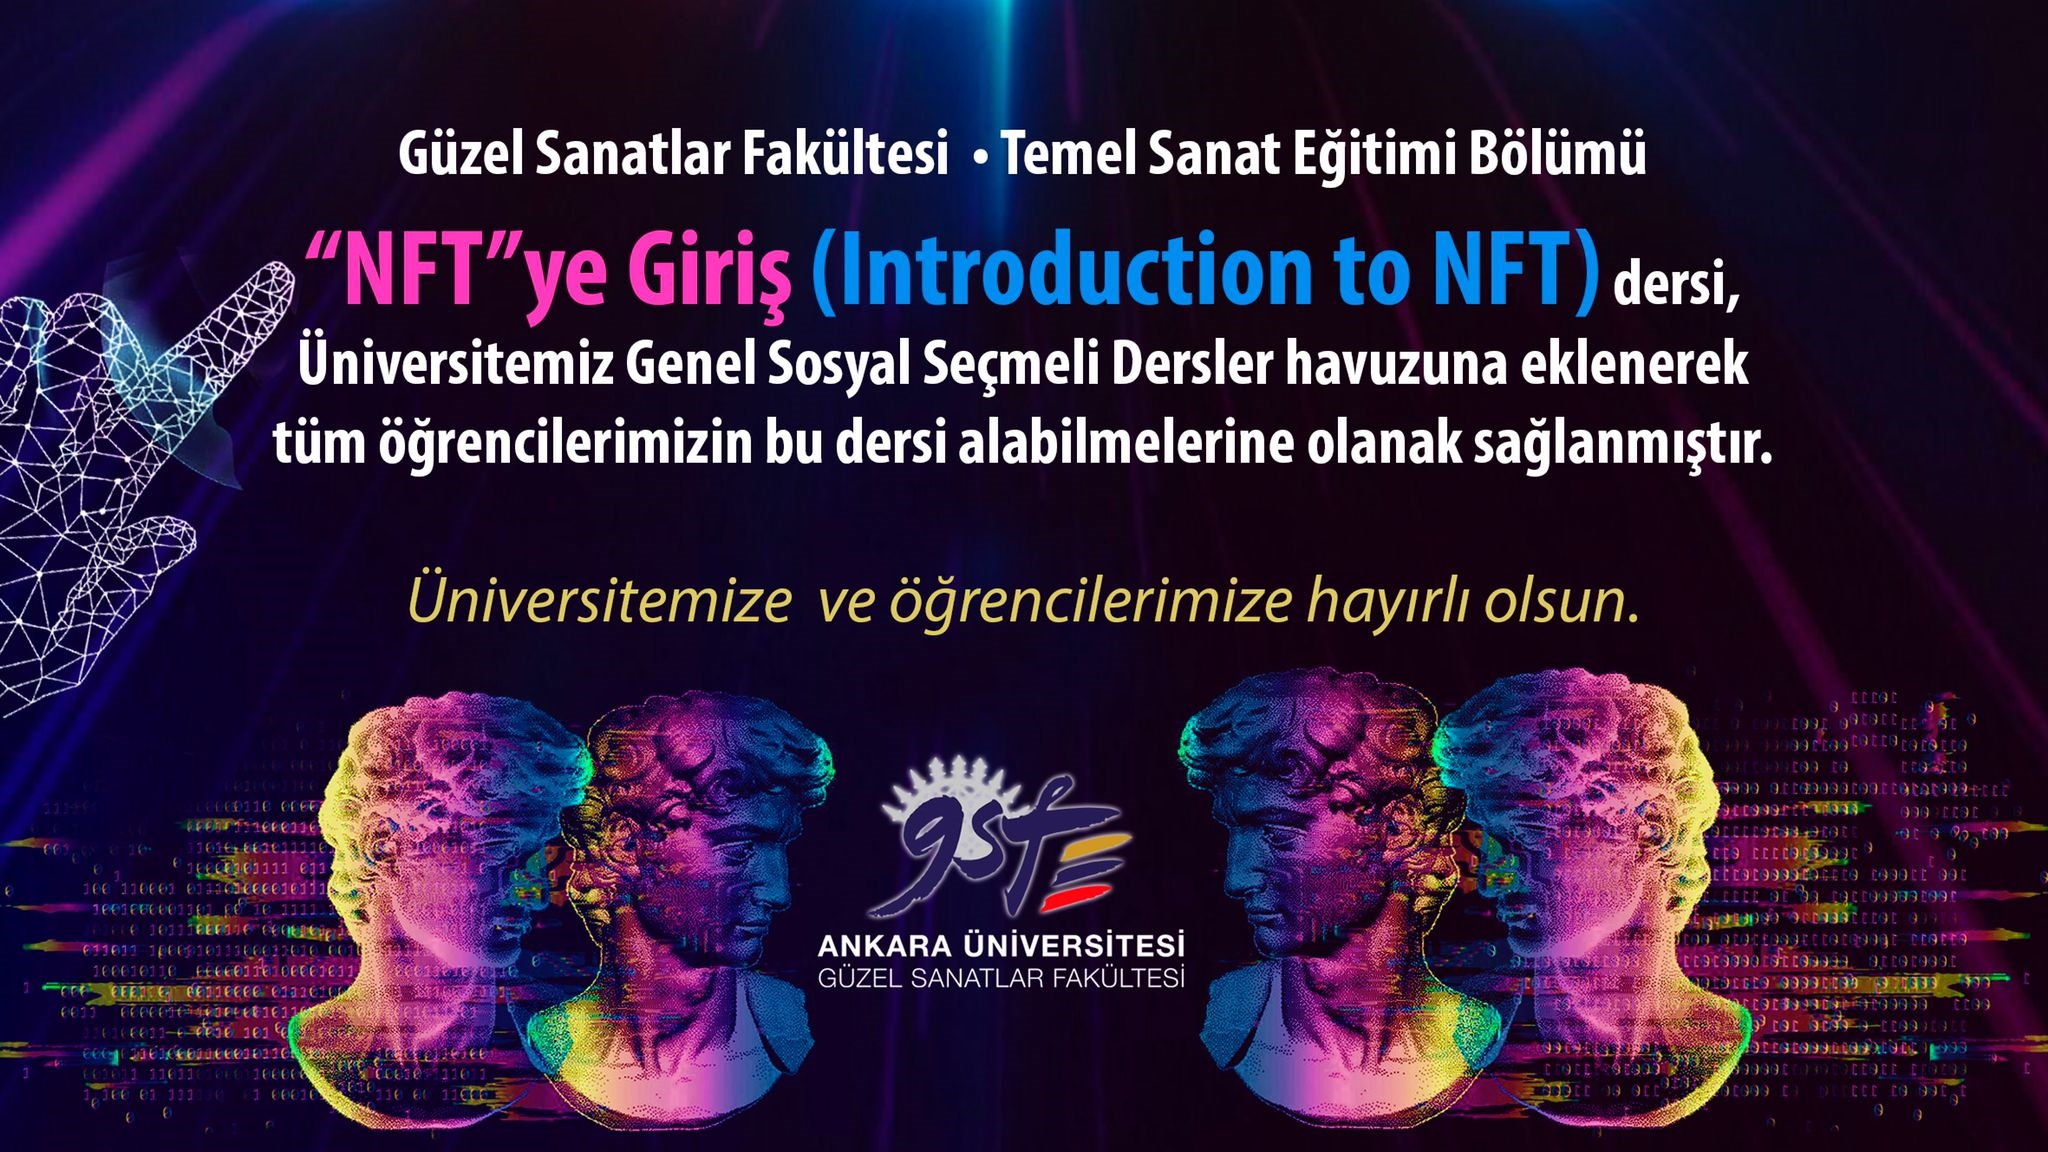 Ankara Üniversitesi, "NFT'ye giriş" dersini seçmeli derslere ekledi